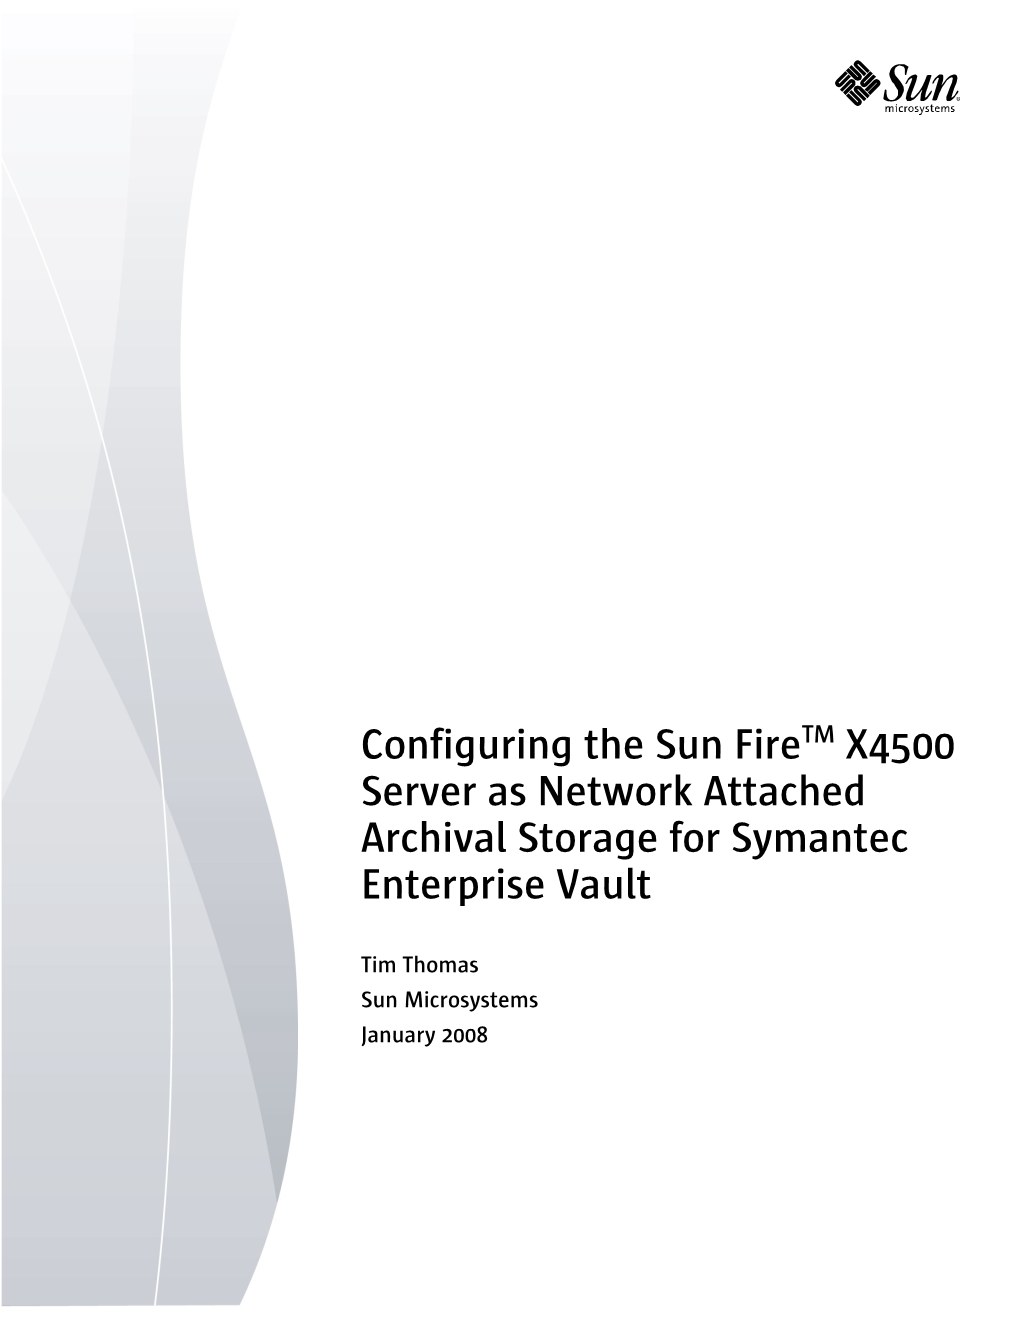 Configuring the Sun Fire X4500 Server As Network Attached Archival Storage for Symantec Enterprise Vault 1 Solution Description